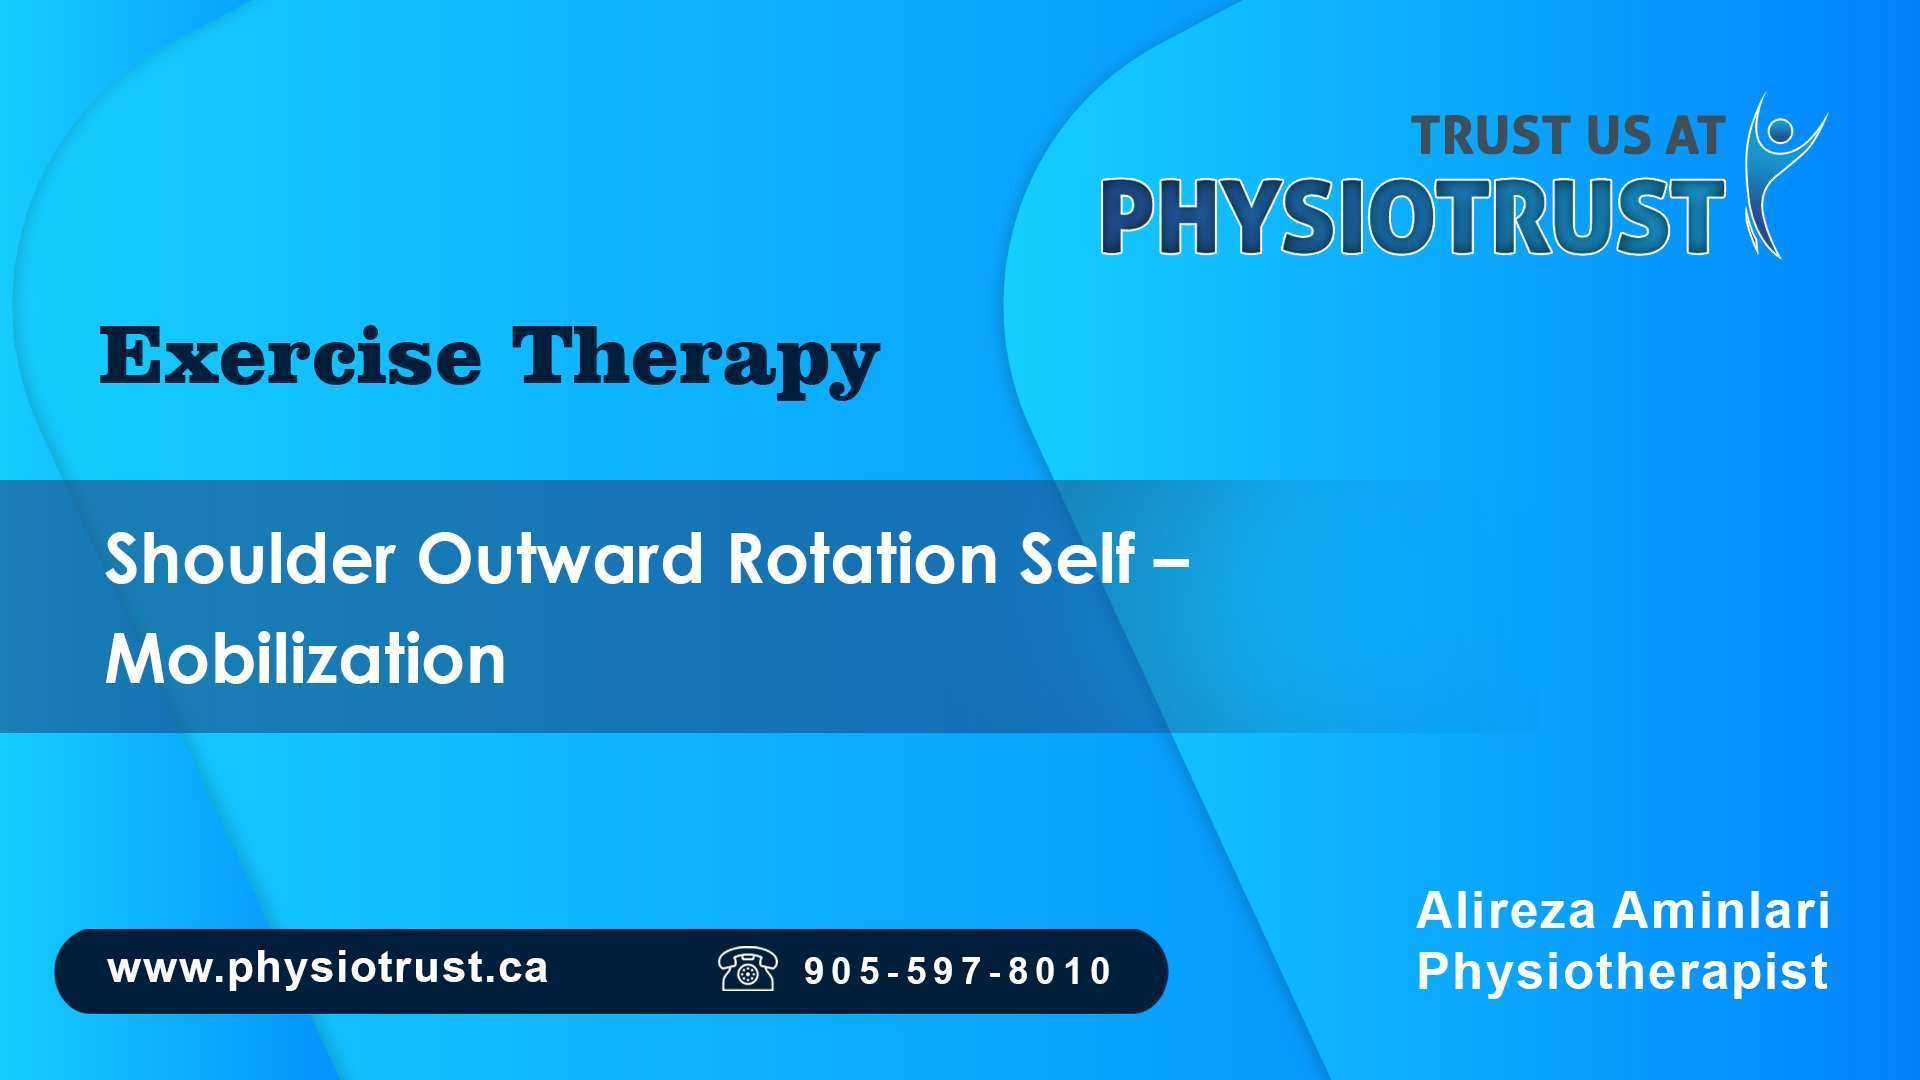 Shoulder outward rotation self mobilization